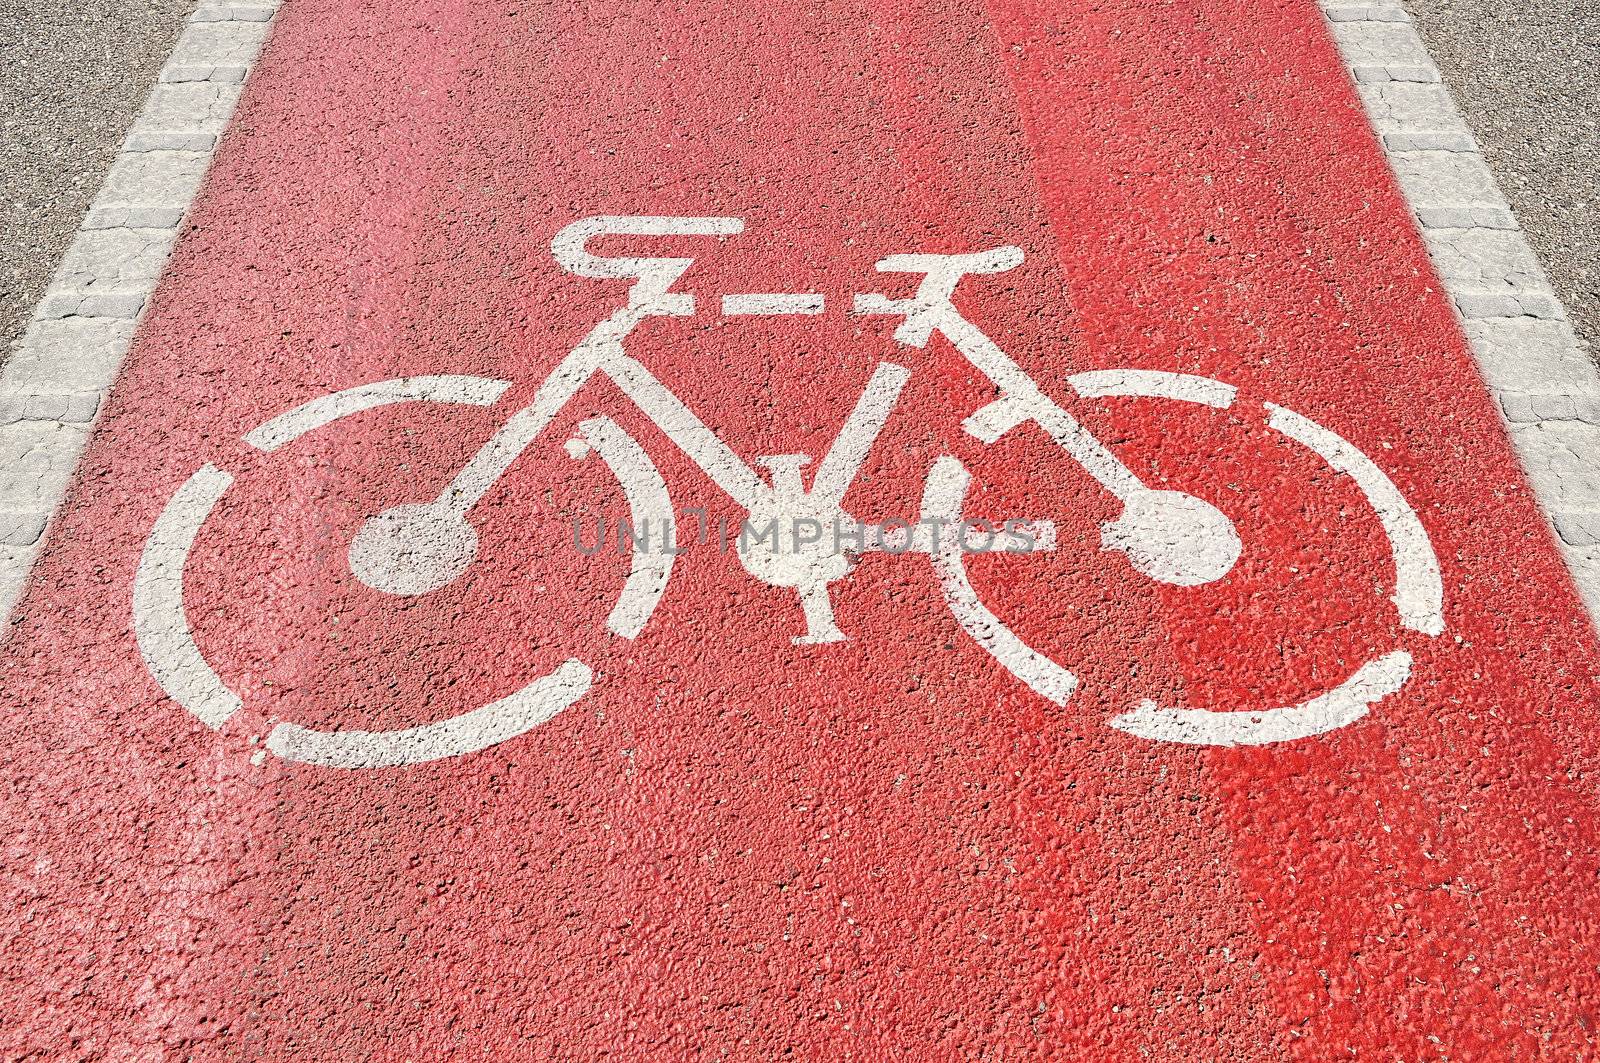 Bicycle Lane by ruigsantos